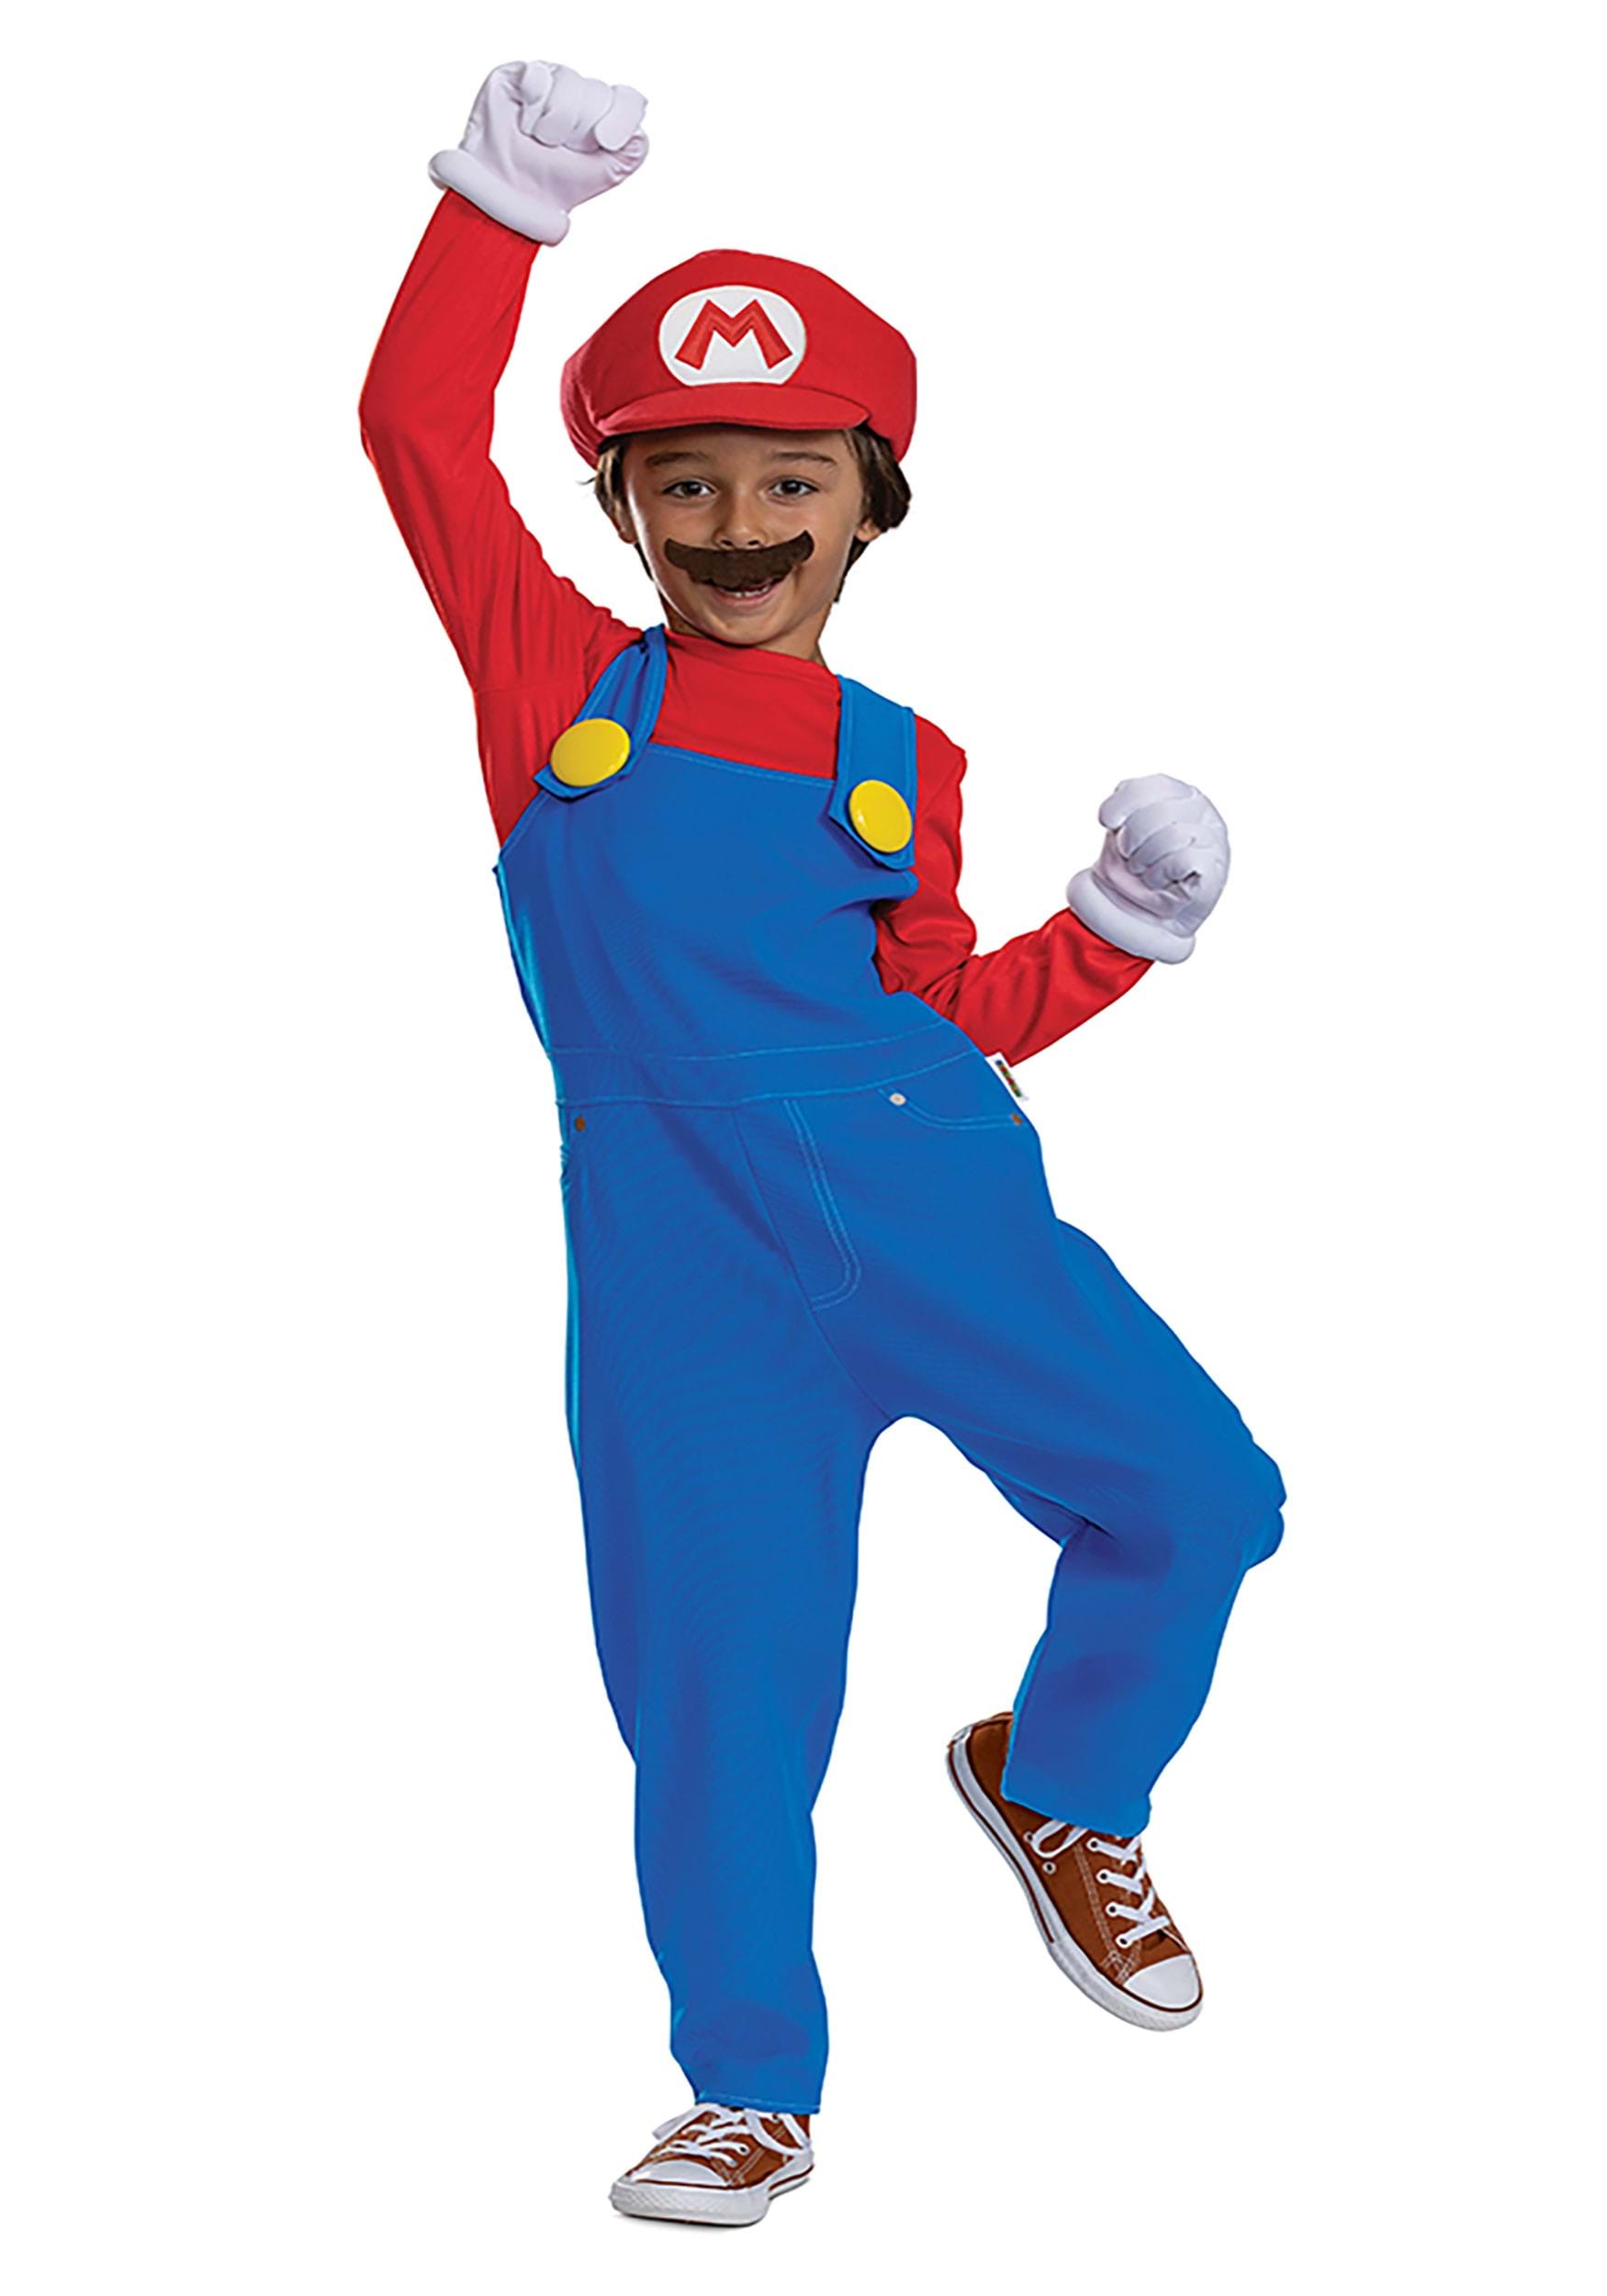 Image of Kid's Super Mario Bros Premium Mario Costume ID DI146319-7/8